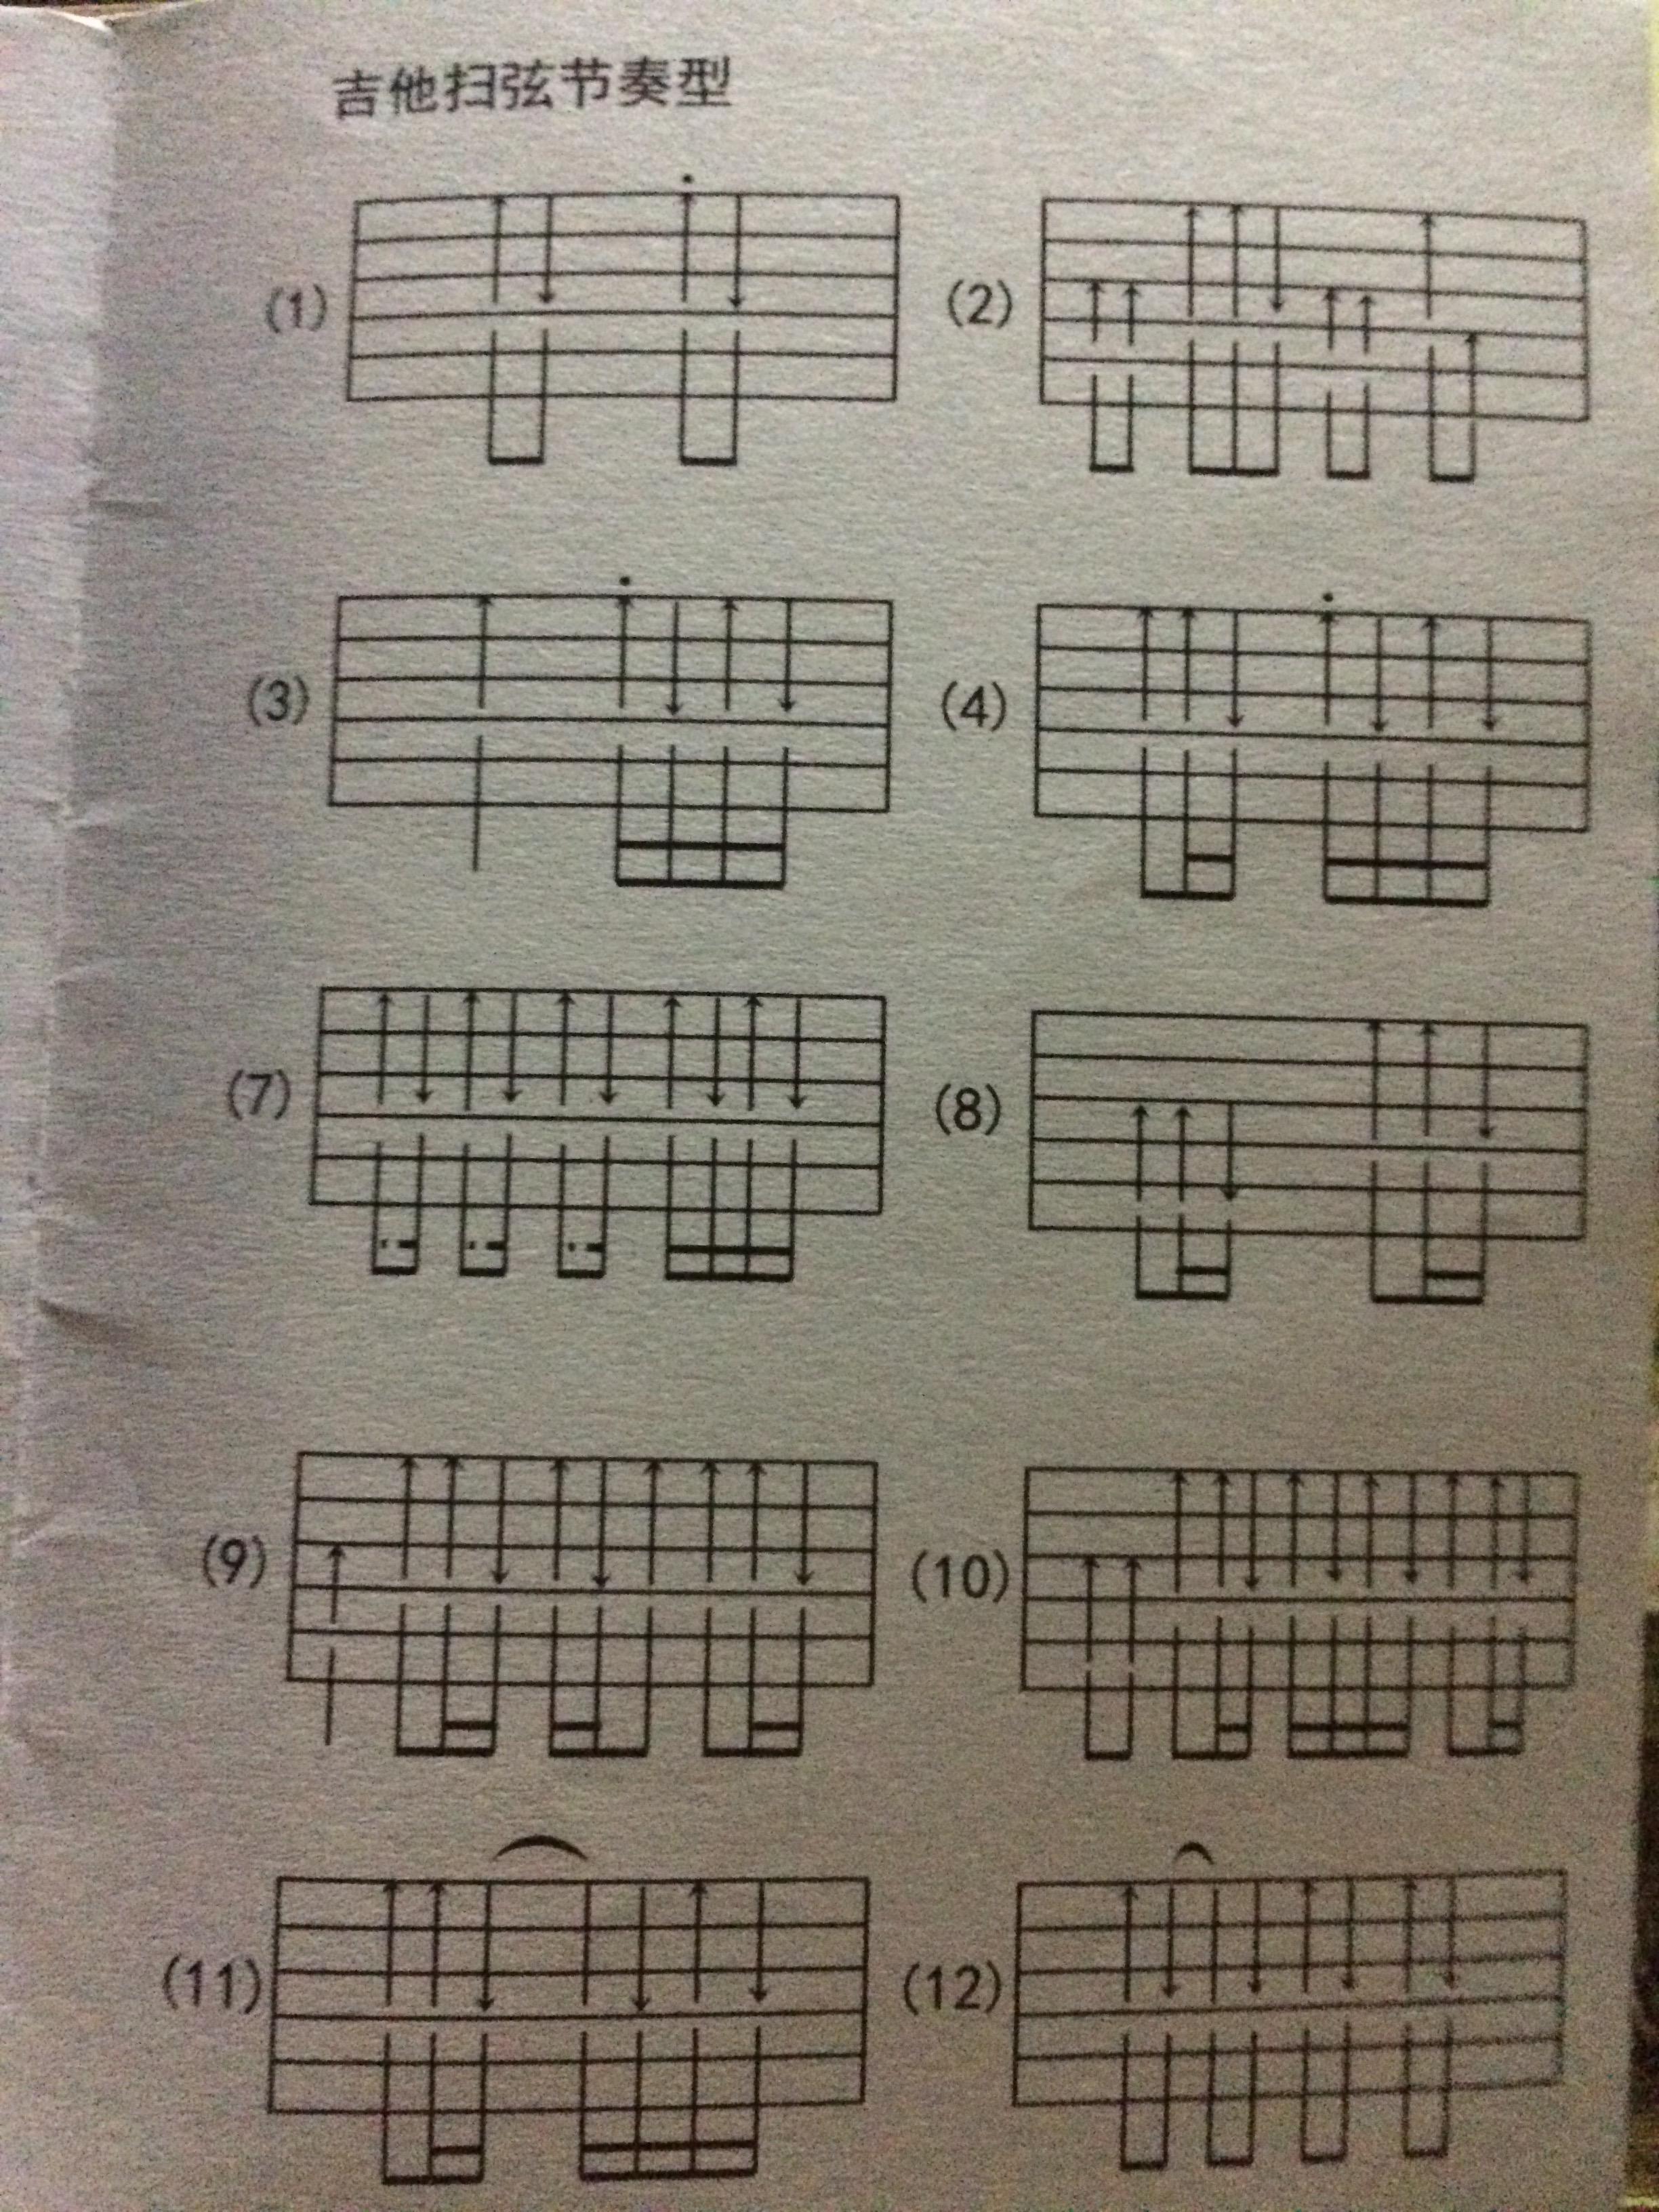 每小节扫四下就是一个基本的节奏型,节奏型又分为扫弦和分解和弦两种